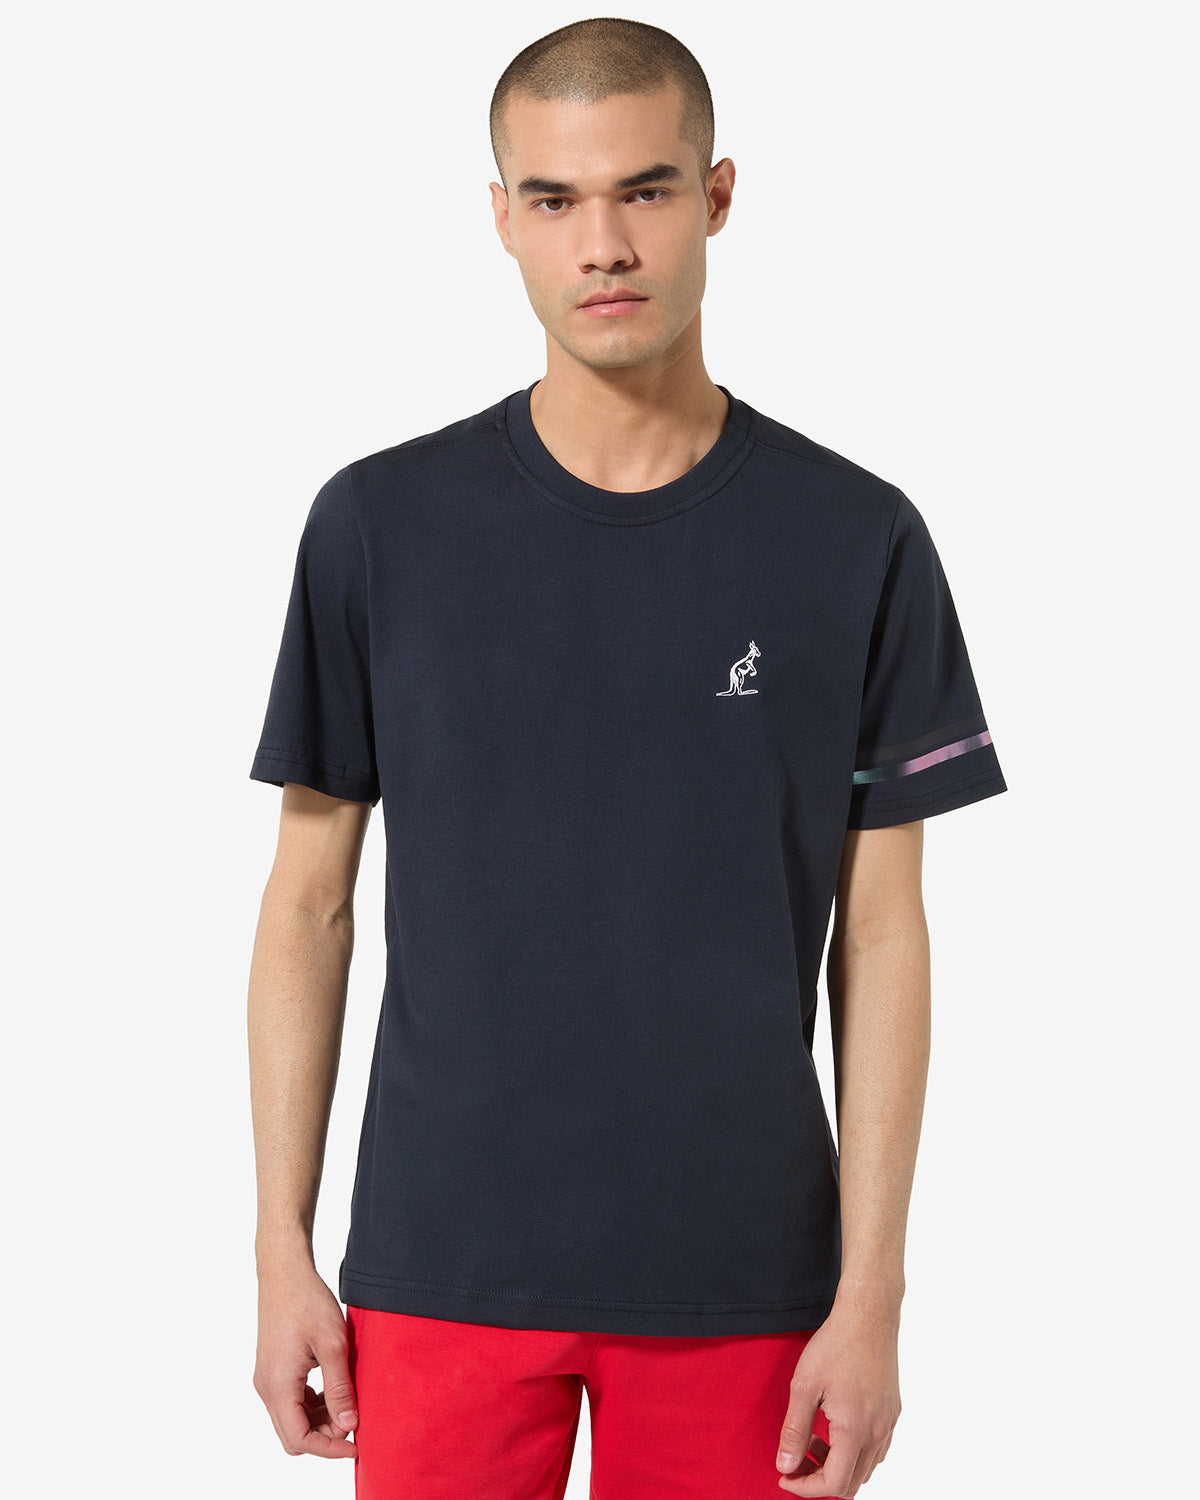 Club T-Shirts: Australian Sportswear